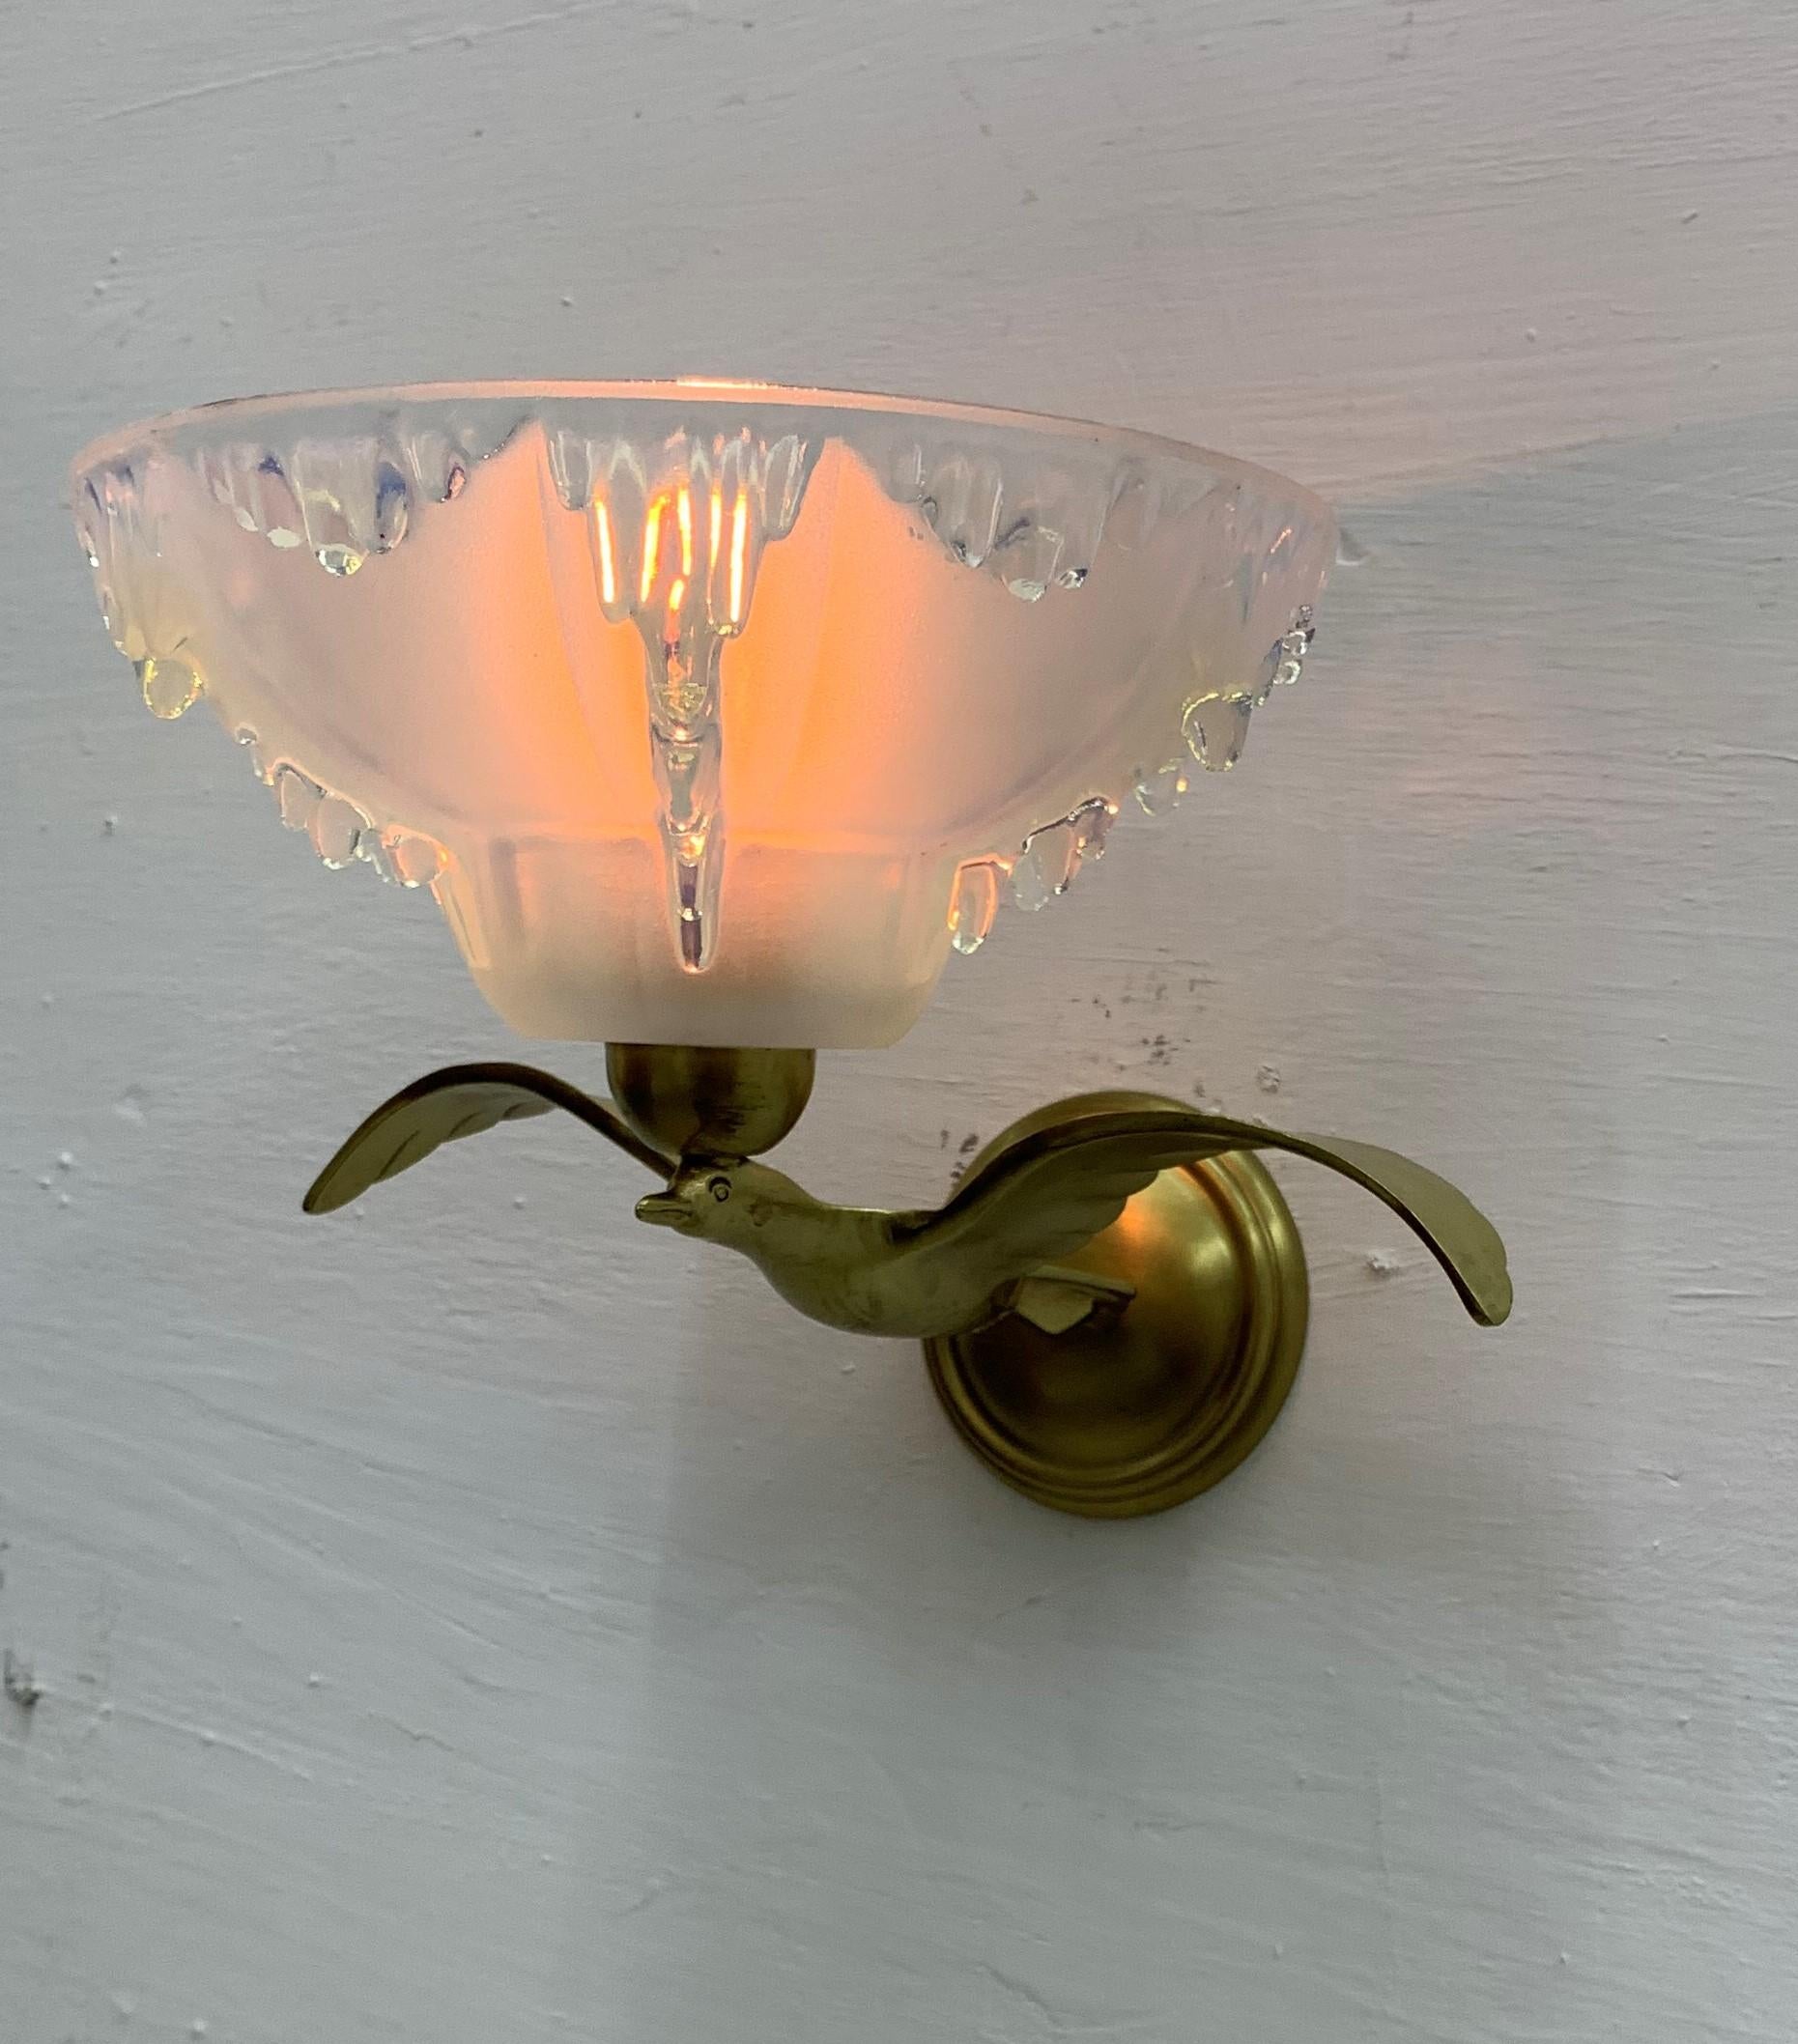 3 Art-Déco-Leuchten in Form von Vögeln, die einen Schirm aus opalisierendem, geformtem Glas halten, signiert von Ezan.
Individuelle Preisgestaltung.